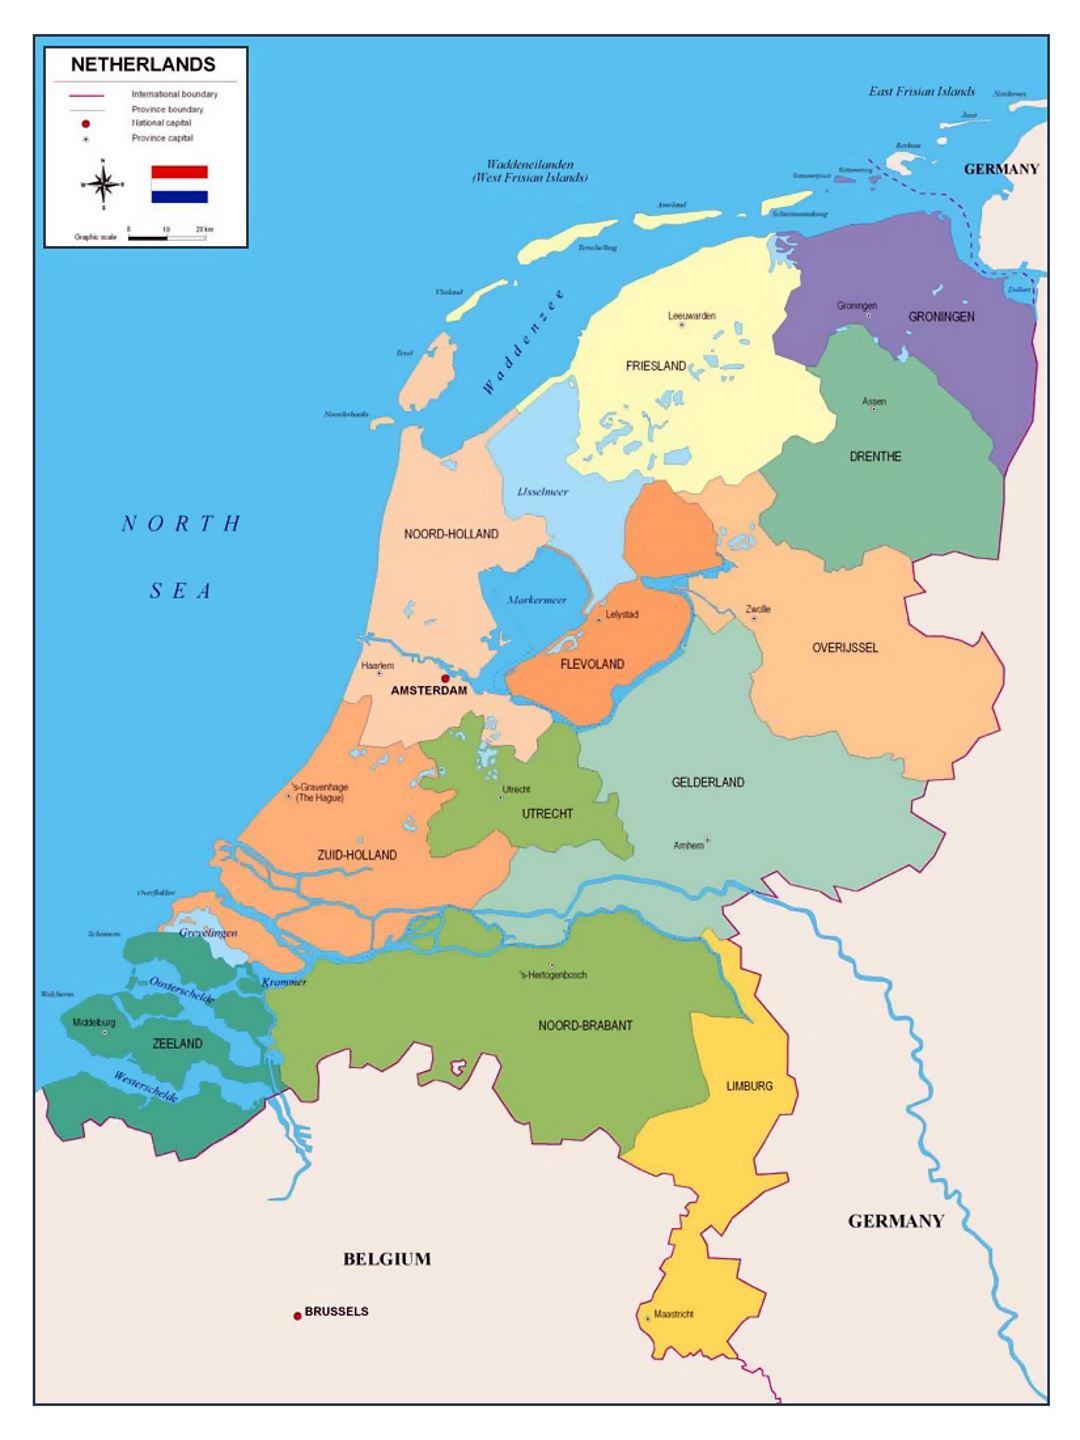 Mapa político y administrativo de los Países Bajos